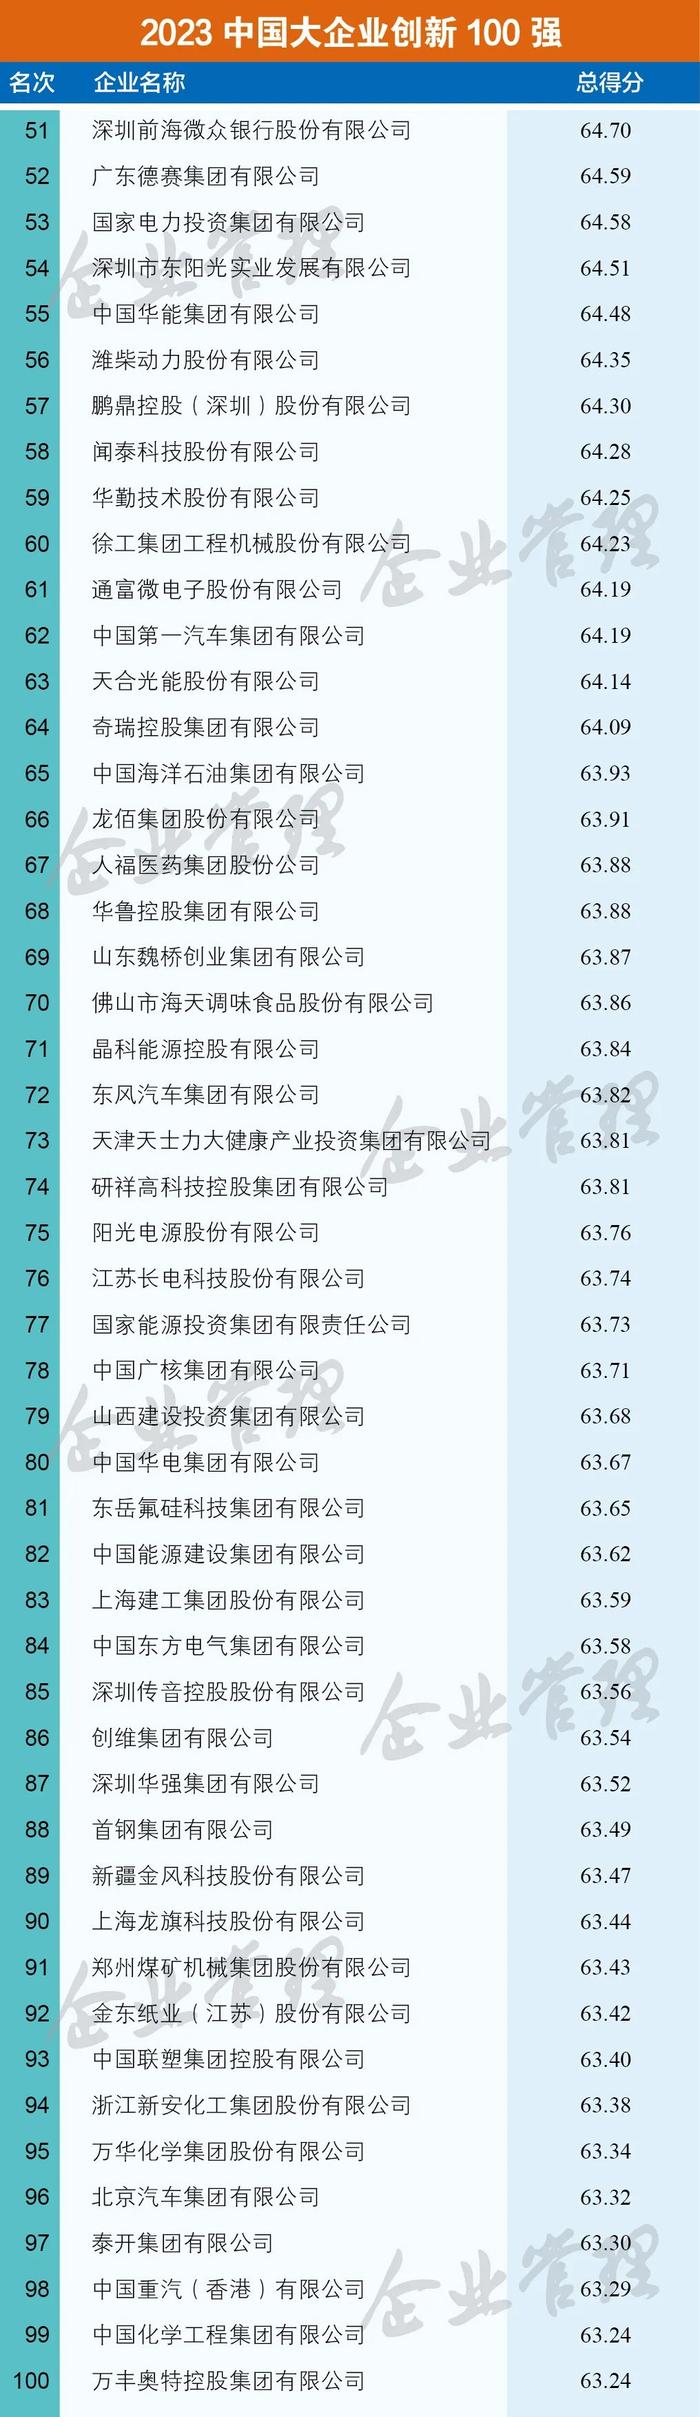 2023中国大企业创新100强名单